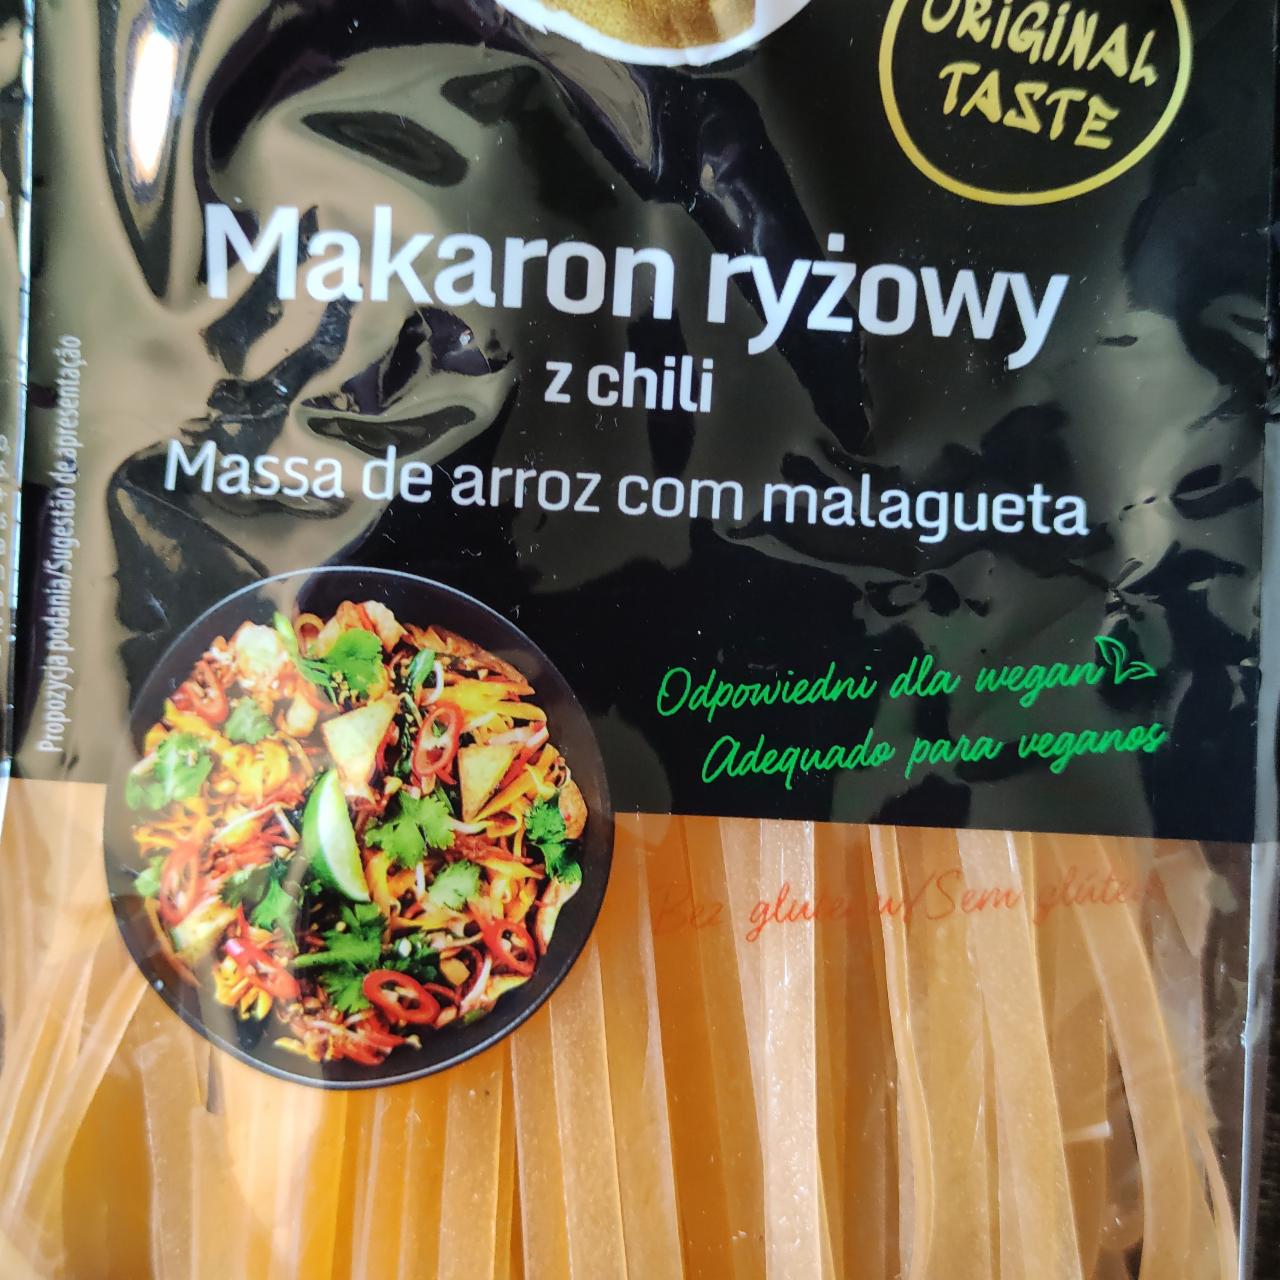 Zdjęcia - Makarony ryżowy z chili Asia Flavours